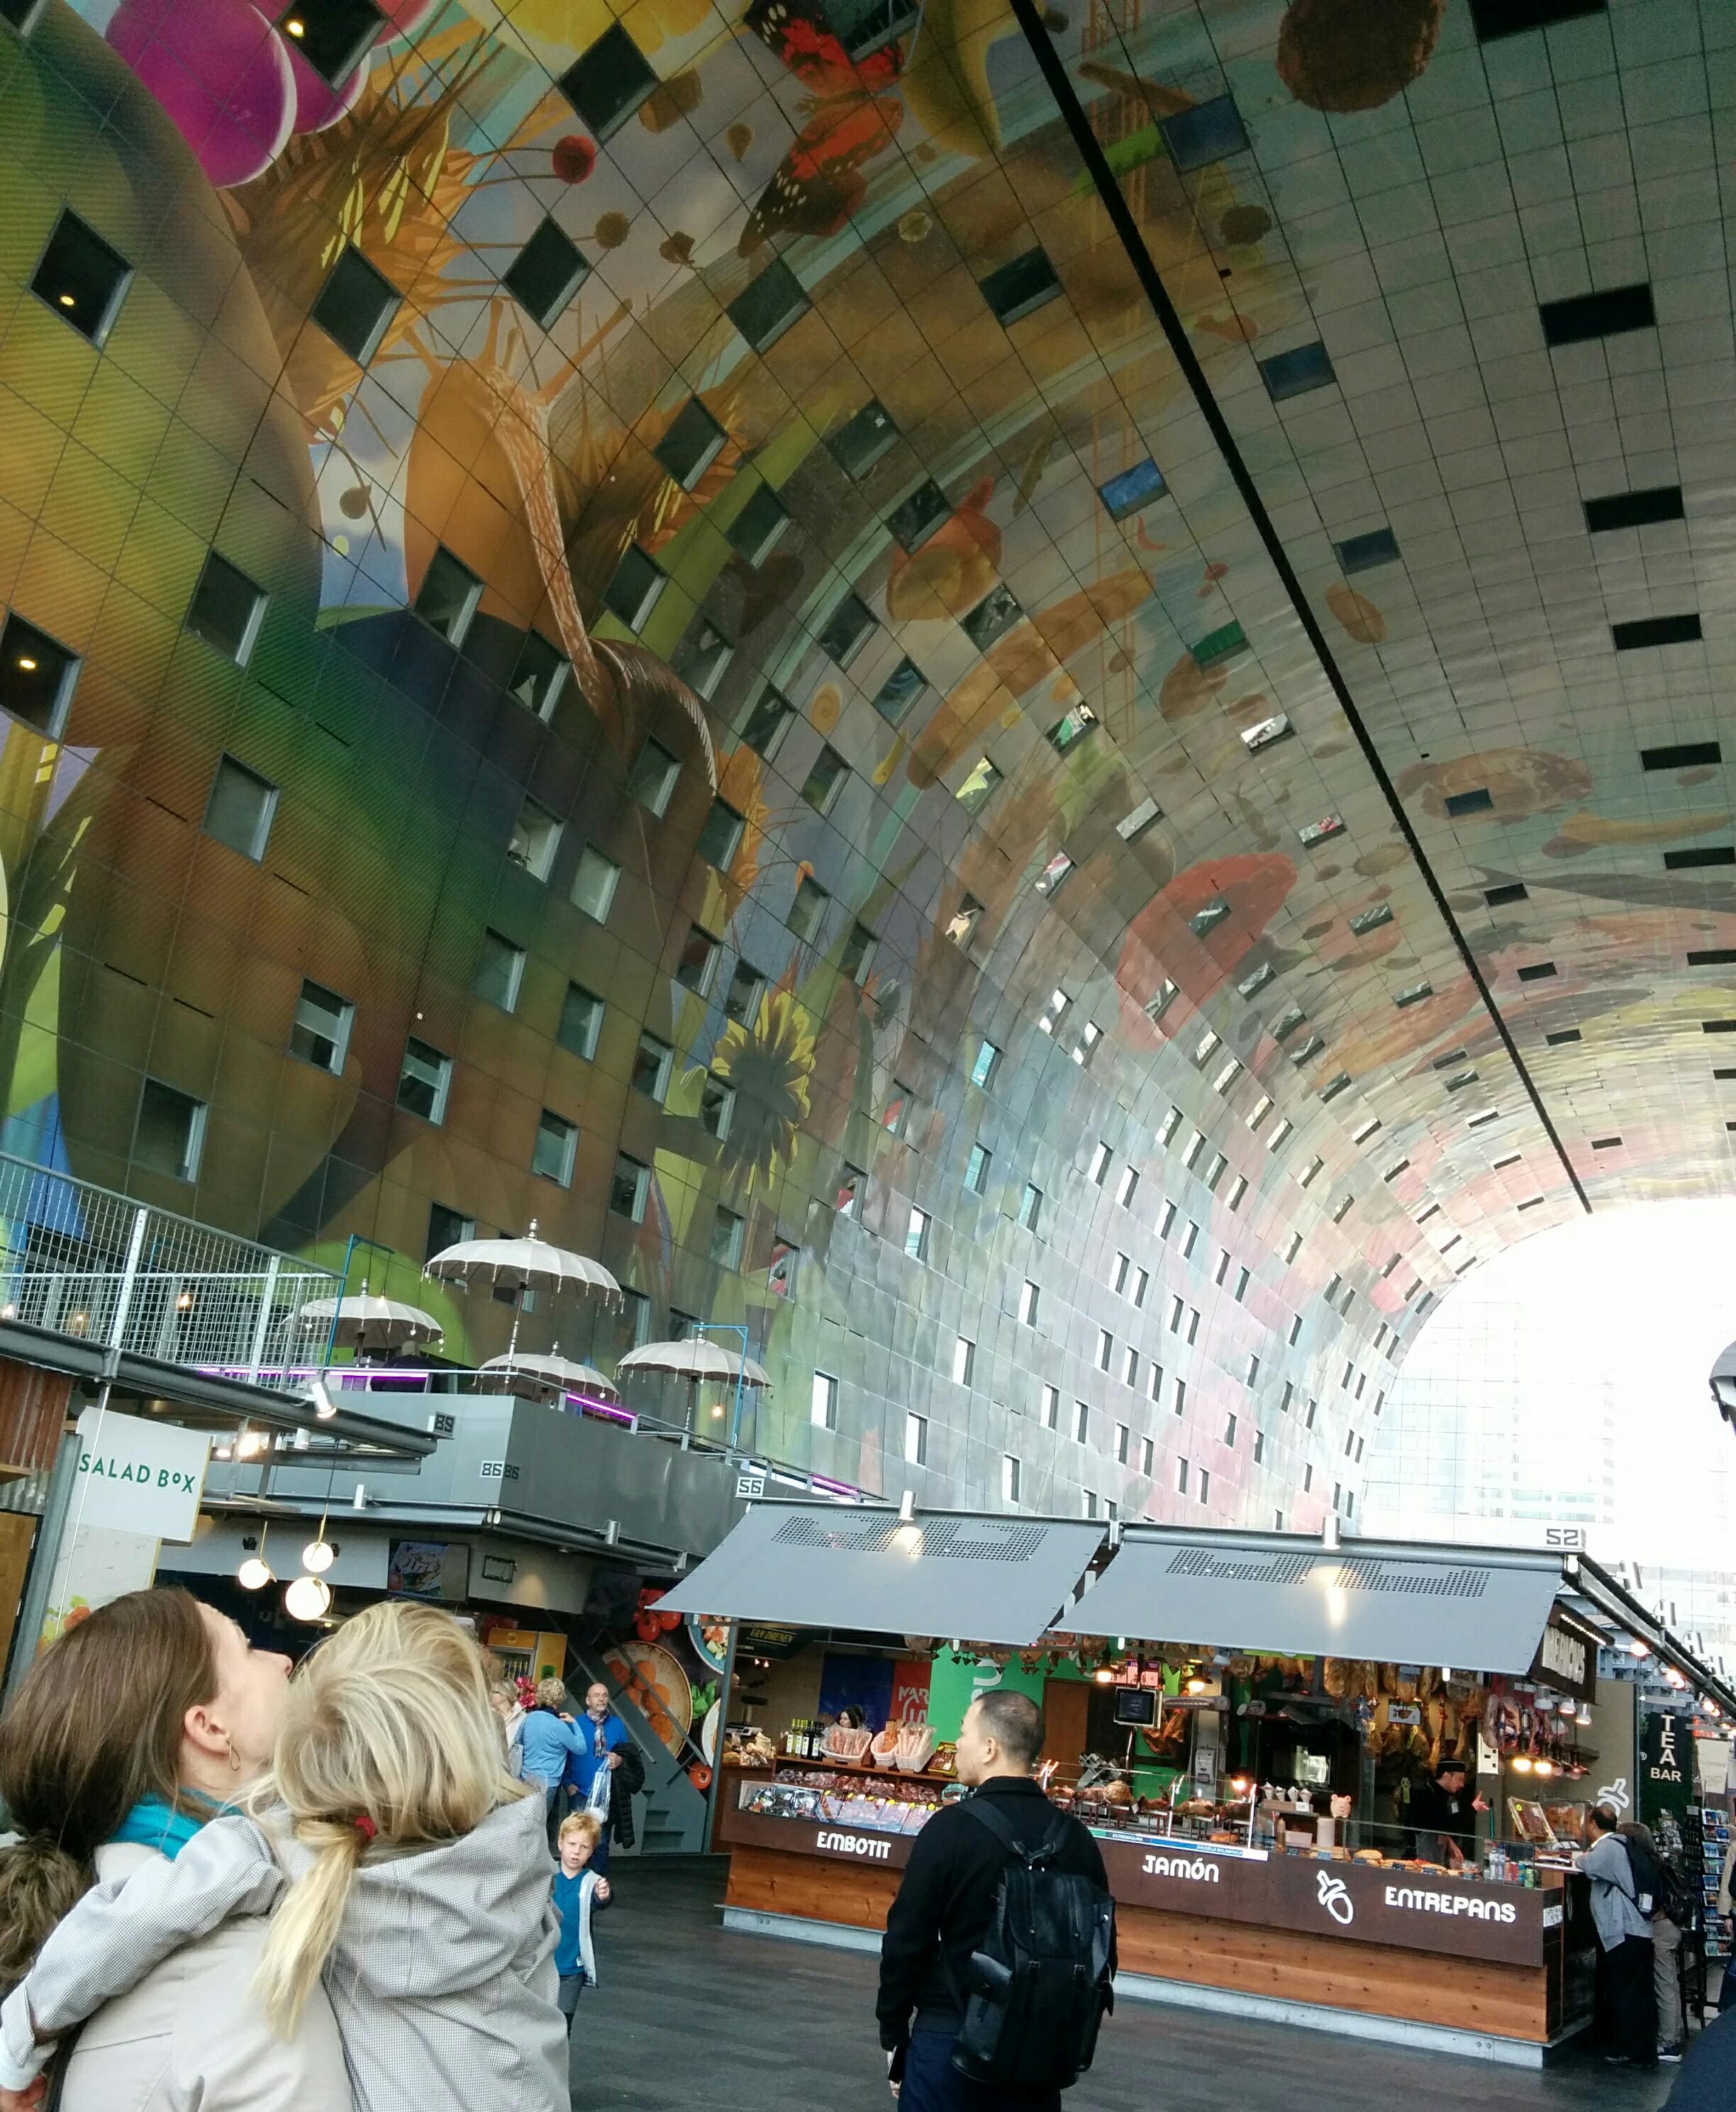 Rotterdams indendørs marked Markthal, med lejligheder og fantastisk udsmykning med væg- og loftmalerier.